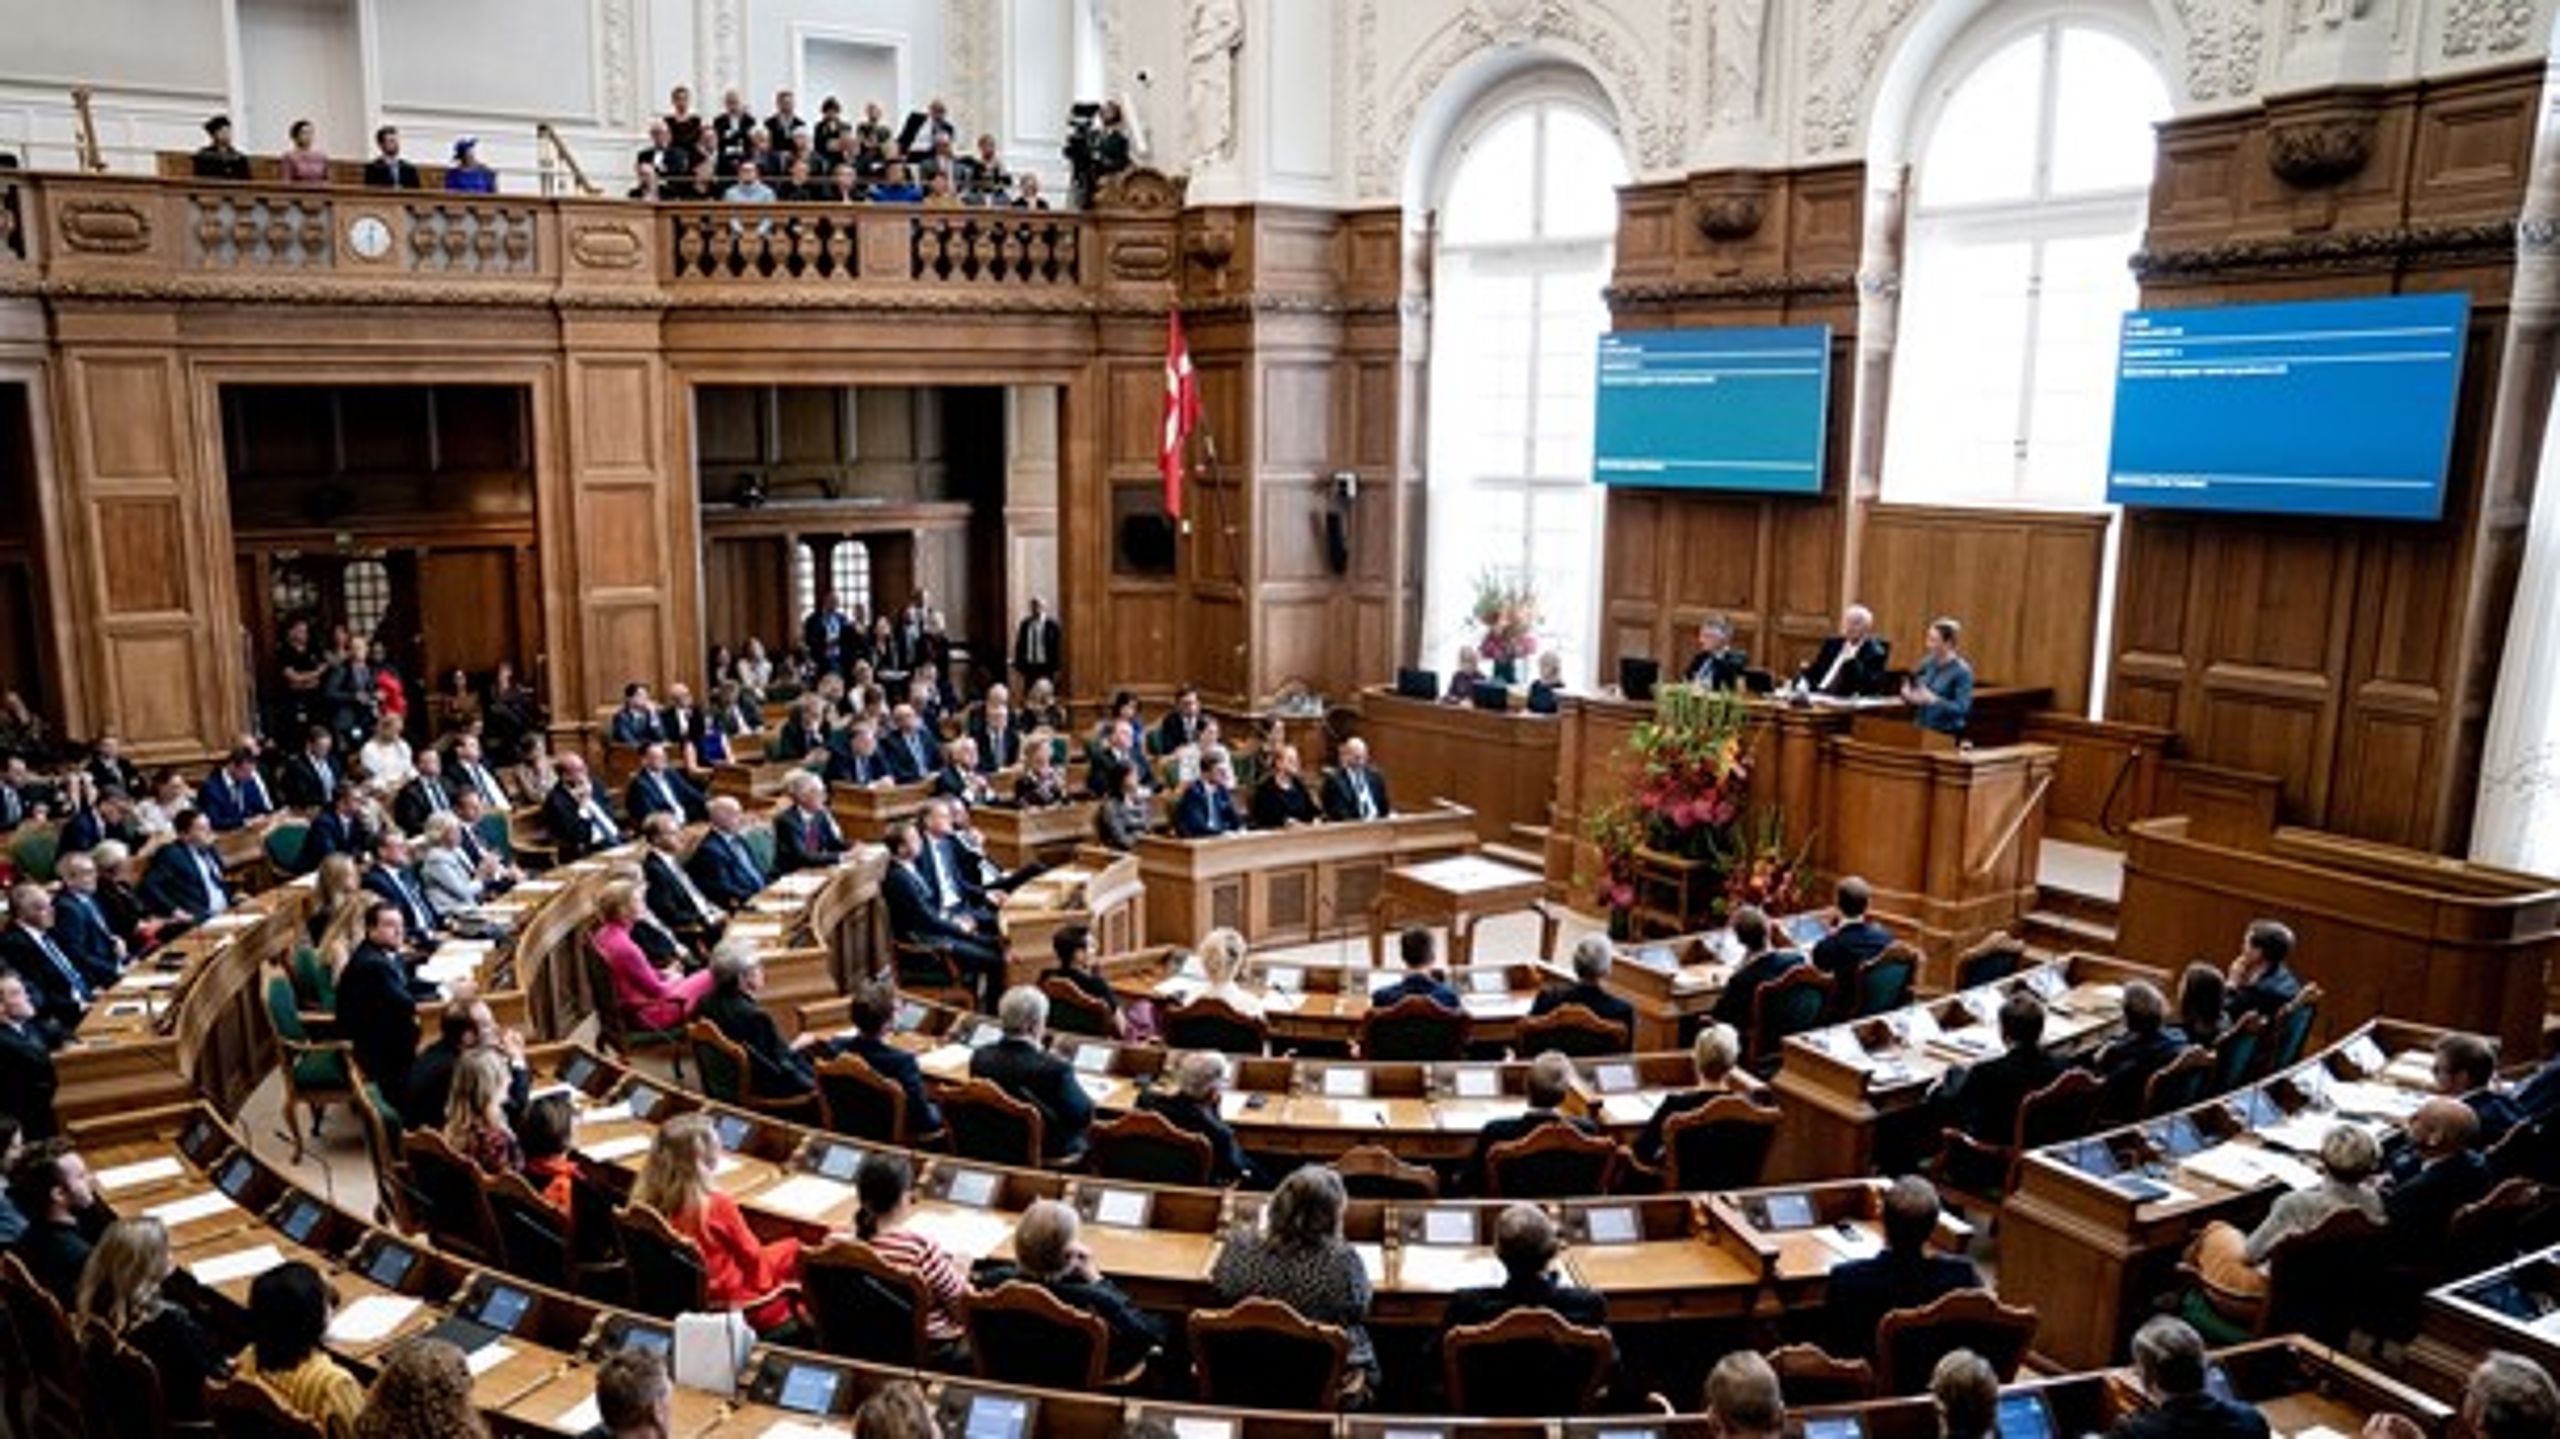 Folketinget og regeringen sprøjter hvert år nye regler ud. Alene i 2019 kom der 100.000 ekstra ord i den lovgivning, som regulerer danskernes liv, skriver Jonas Herby.